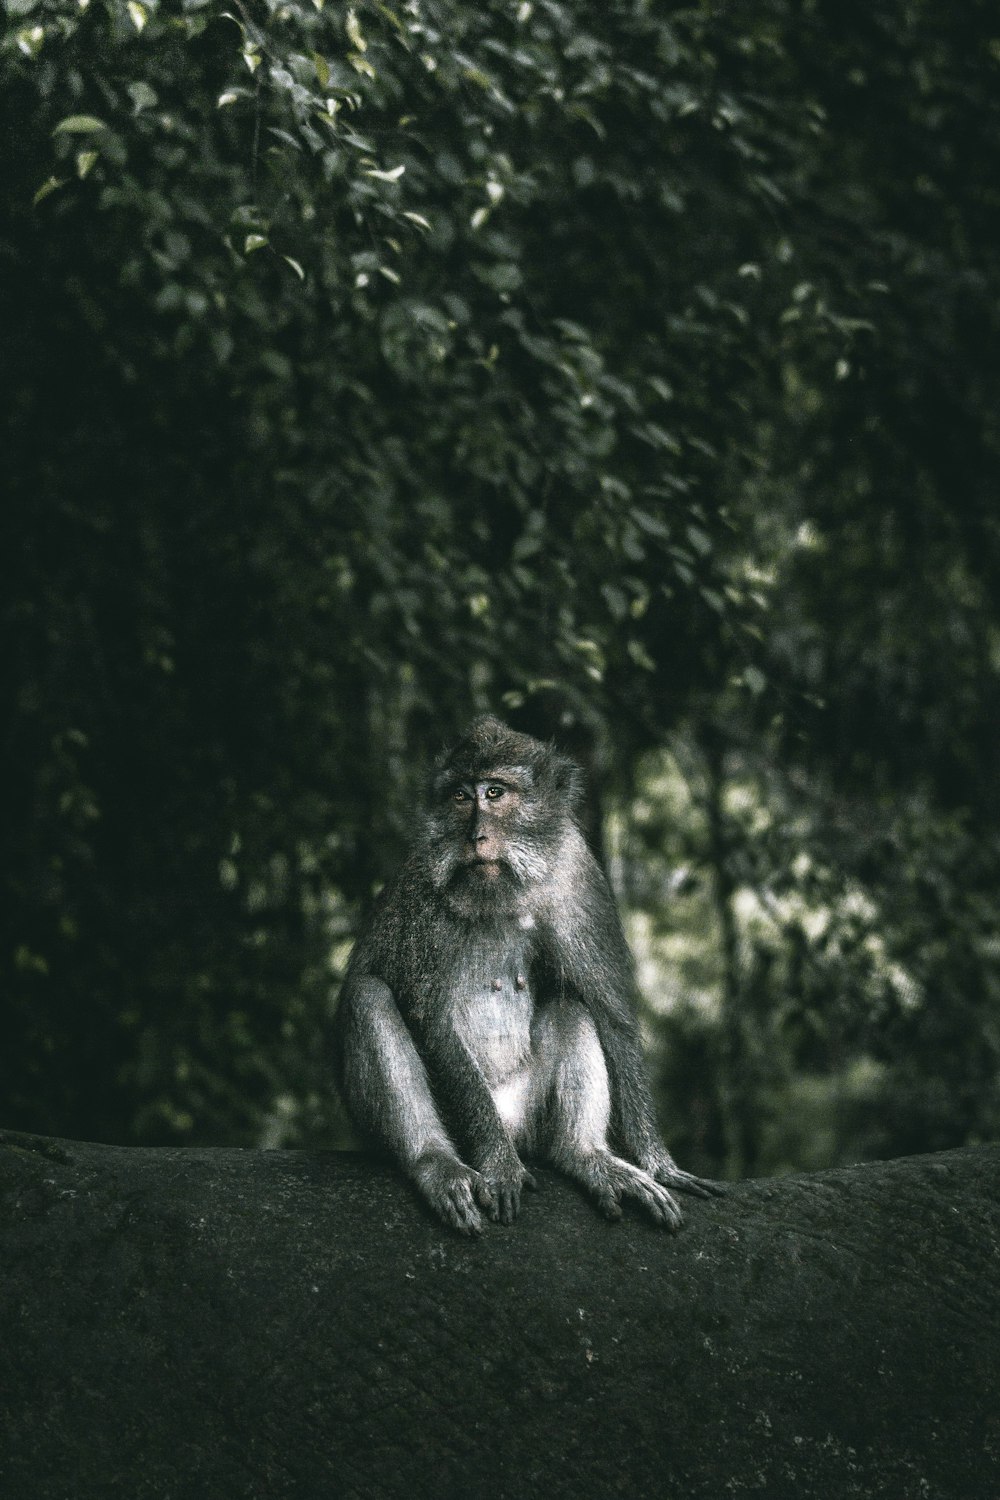 나뭇가지 위에 앉아 있는 원숭이